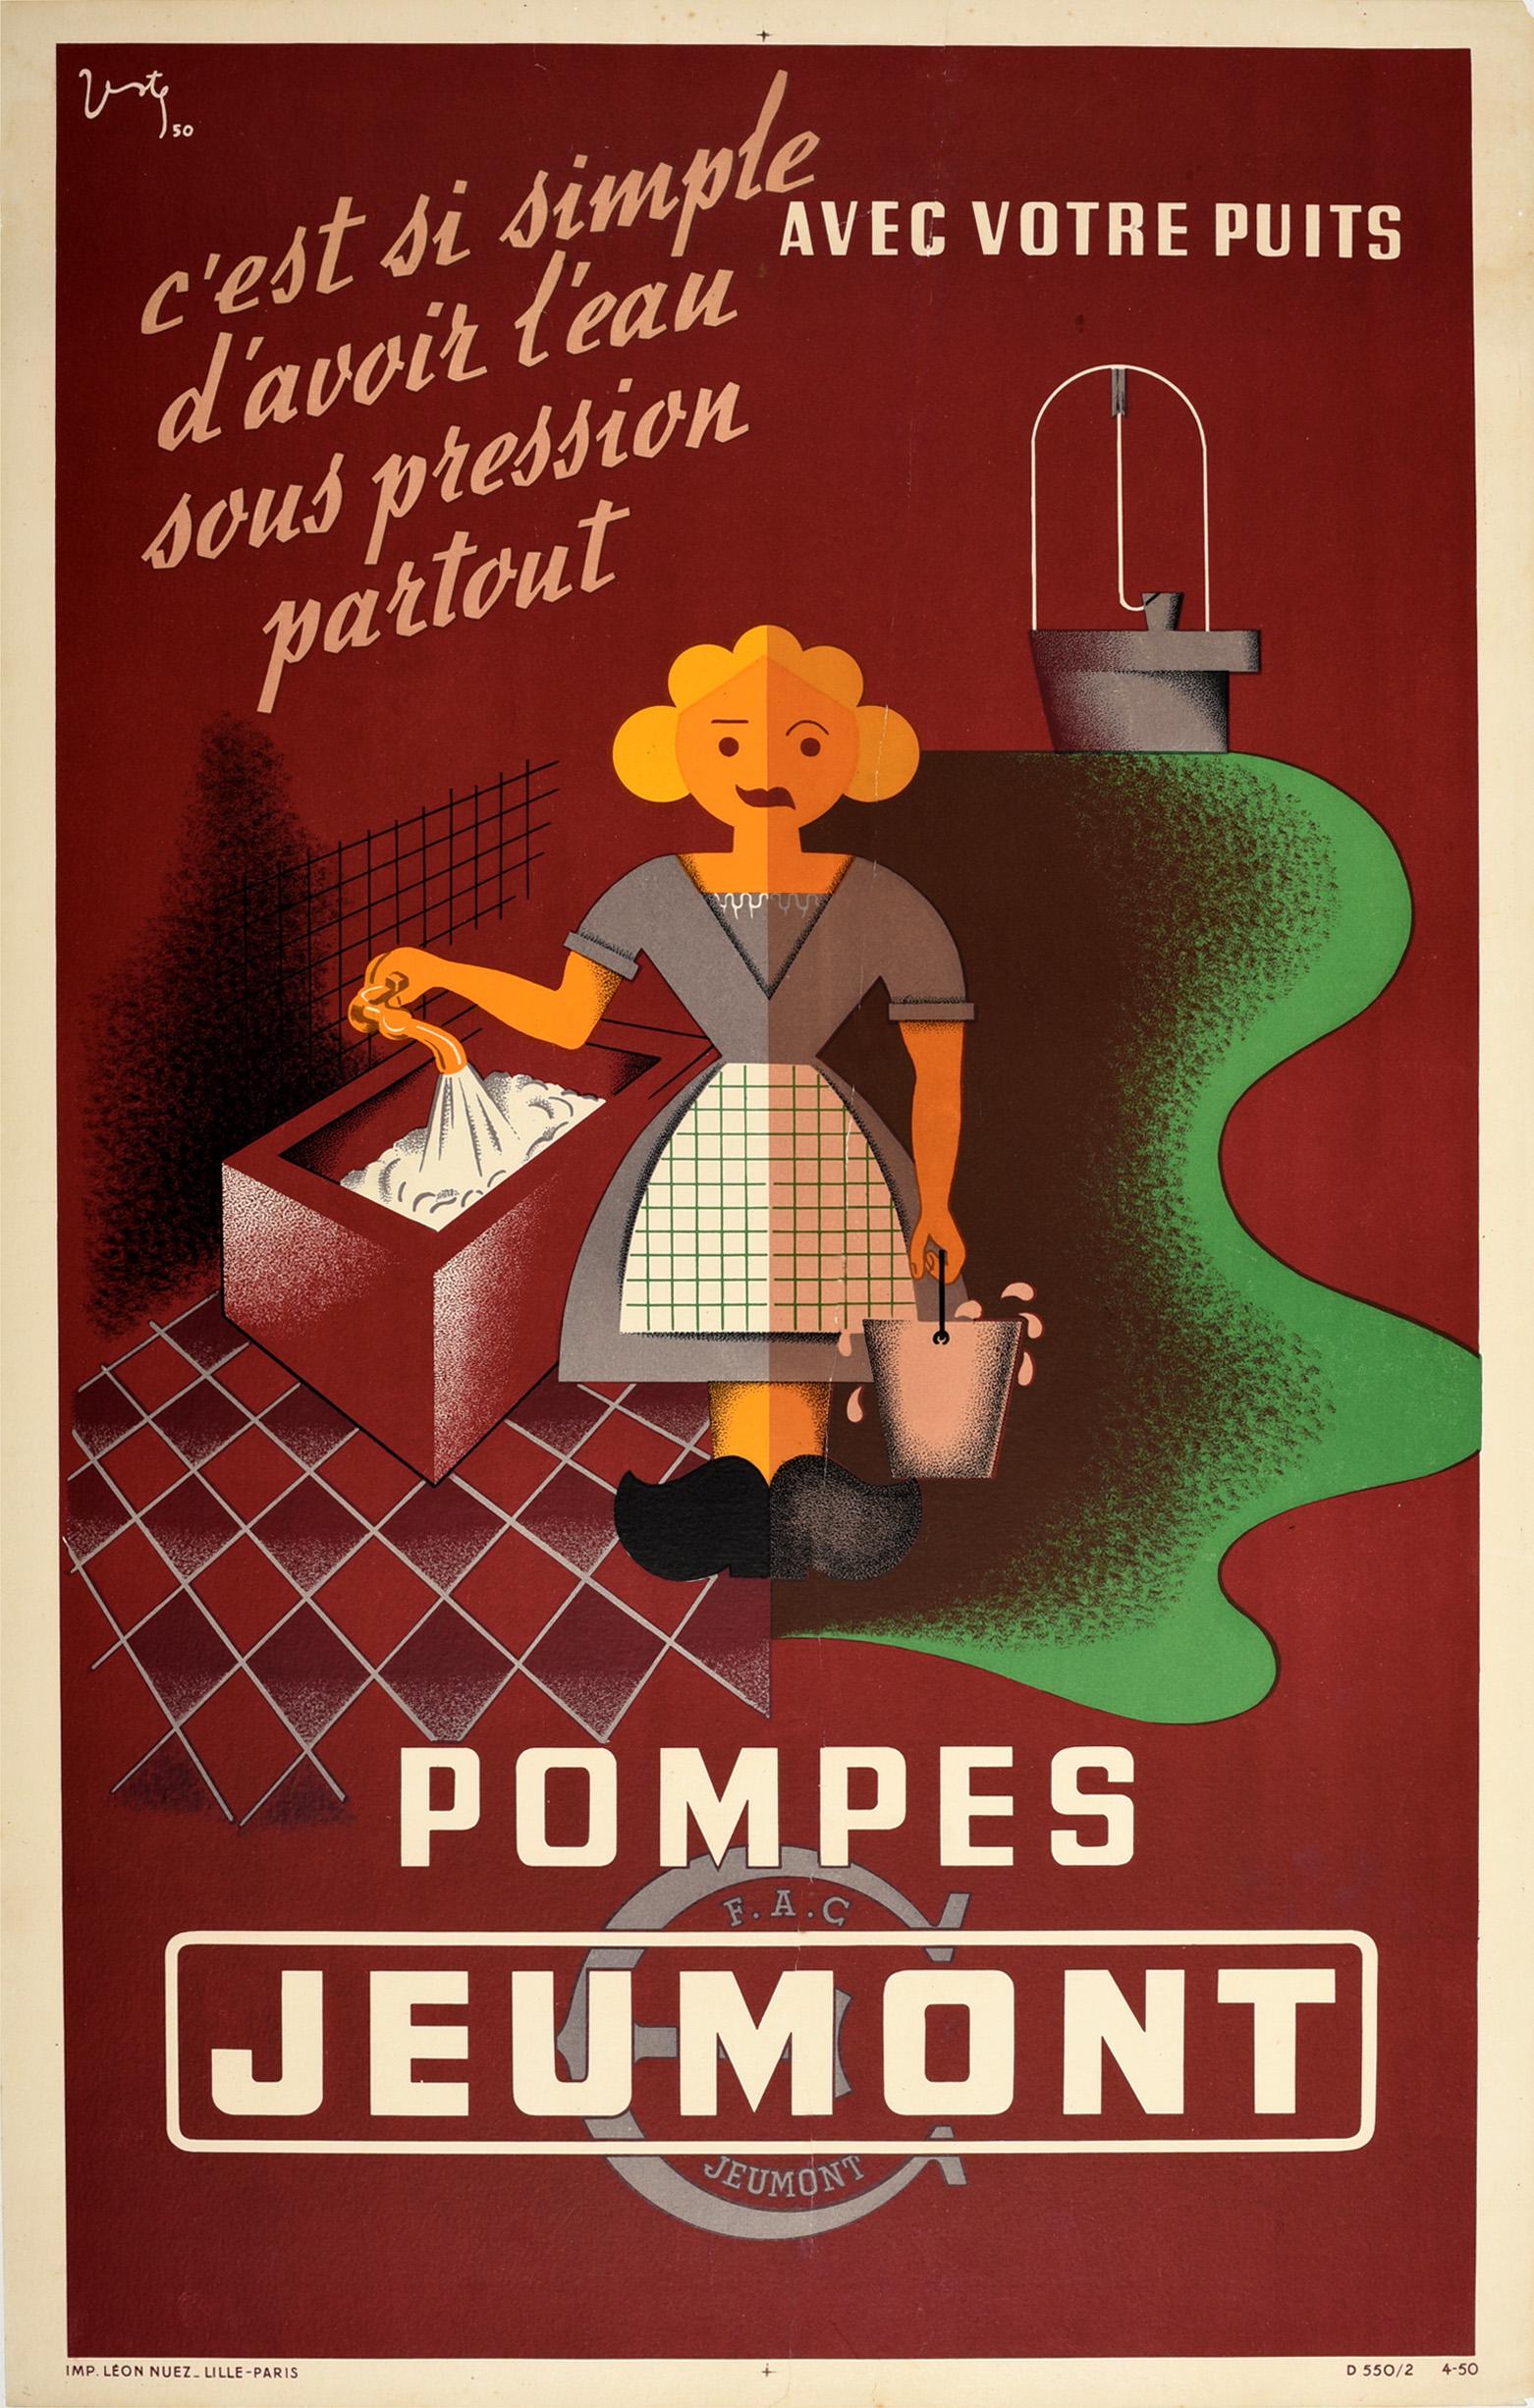 Verte Print - Original Vintage Advertising Poster Pompes Jeumont Water Pumps Modernist Design